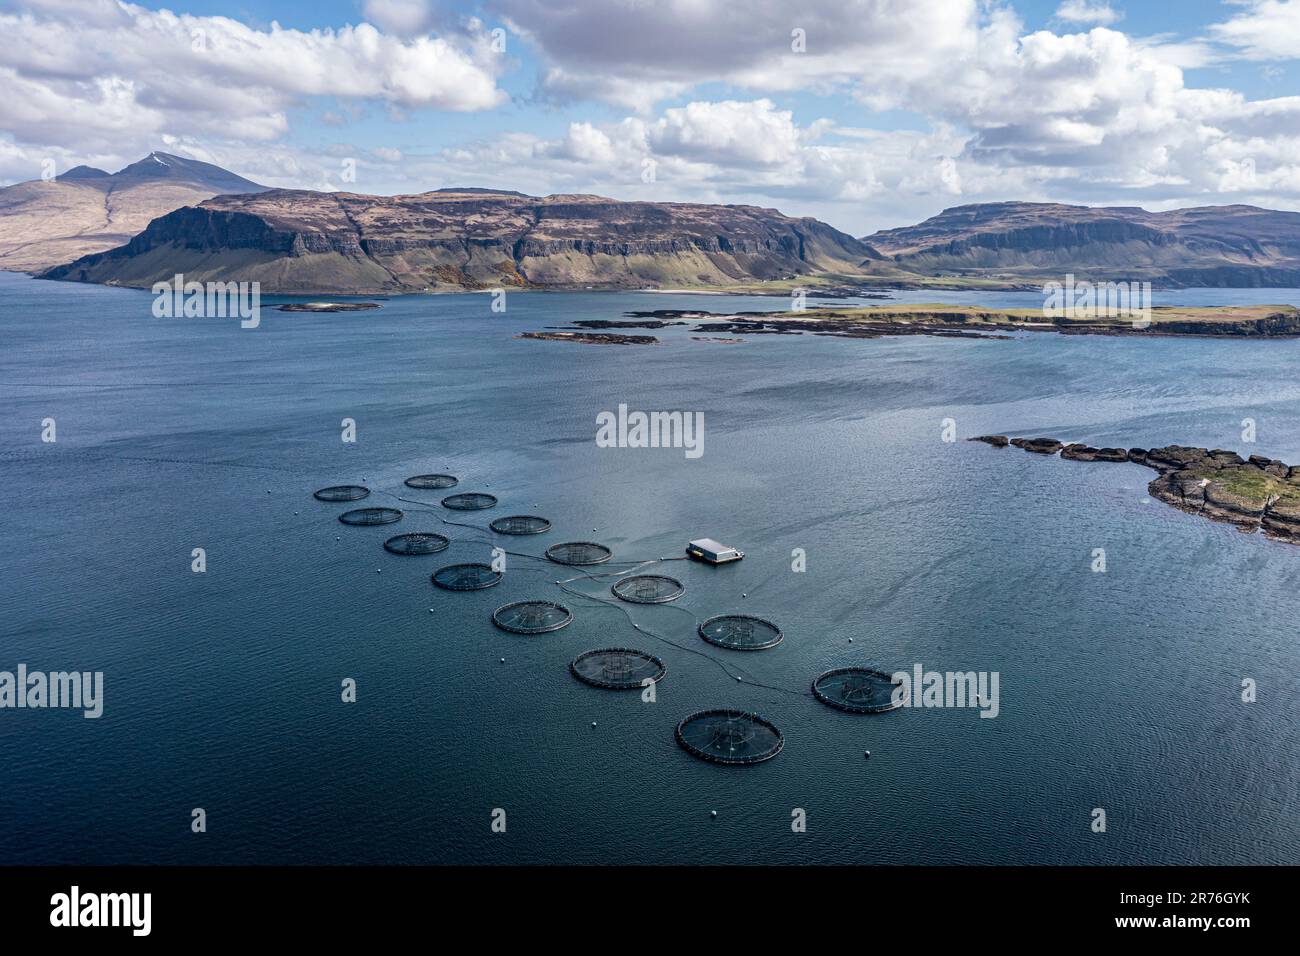 Gabbie galleggianti di un allevamento di salmone, mare tra l'isola di Ulva e l'isola di Mull, mt. Ben More (Mull) sul retro, vista aerea, Scozia, Regno Unito Foto Stock